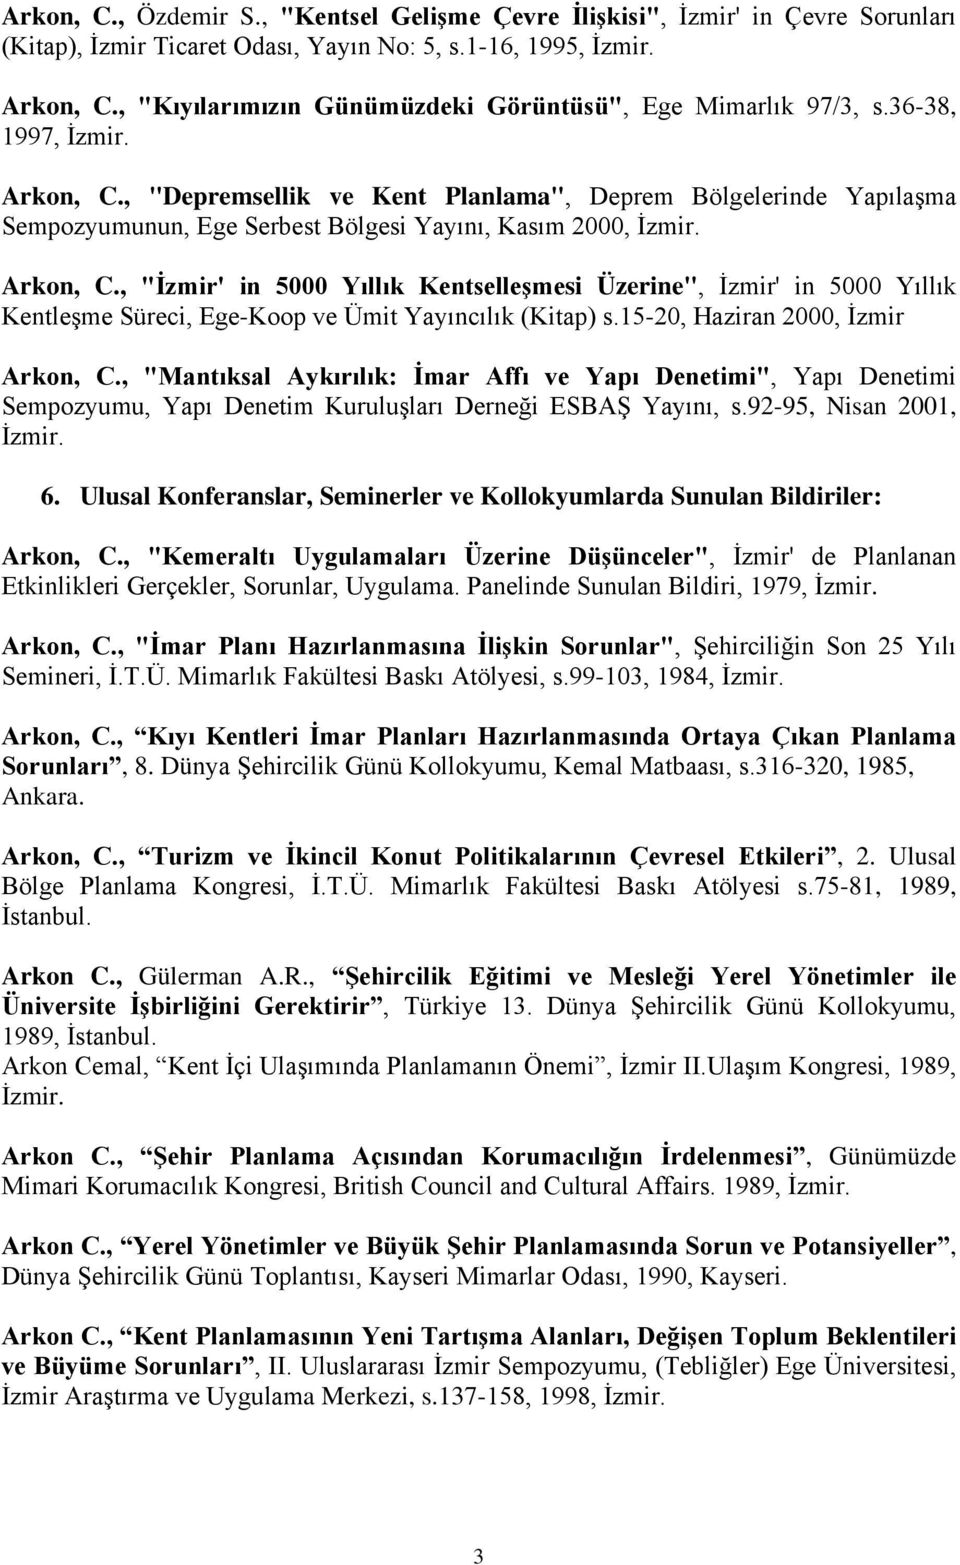 , "Depremsellik ve Kent Planlama", Deprem Bölgelerinde Yapılaşma Sempozyumunun, Ege Serbest Bölgesi Yayını, Kasım 2000, İzmir. Arkon, C.